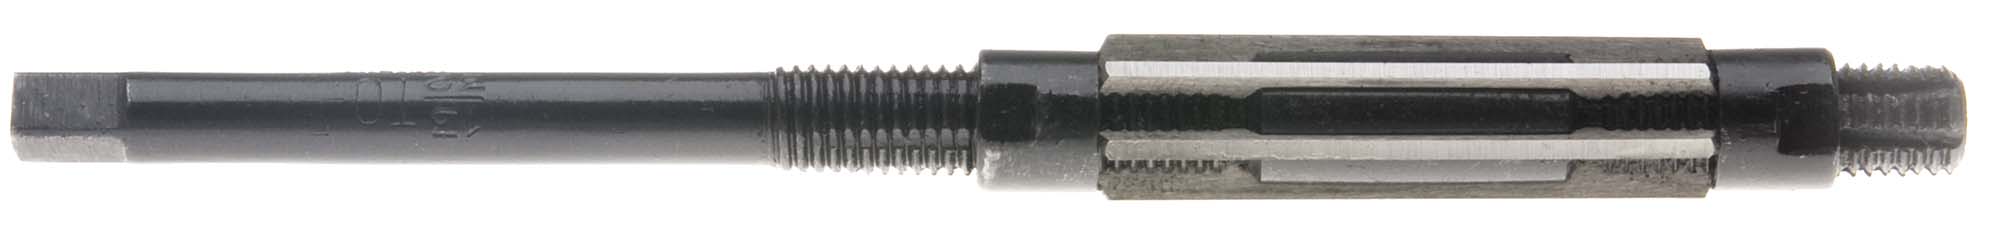 RMBL-N High Speed Steel Adjustable Blade Reamer, 2 7/32"-2 3/4"